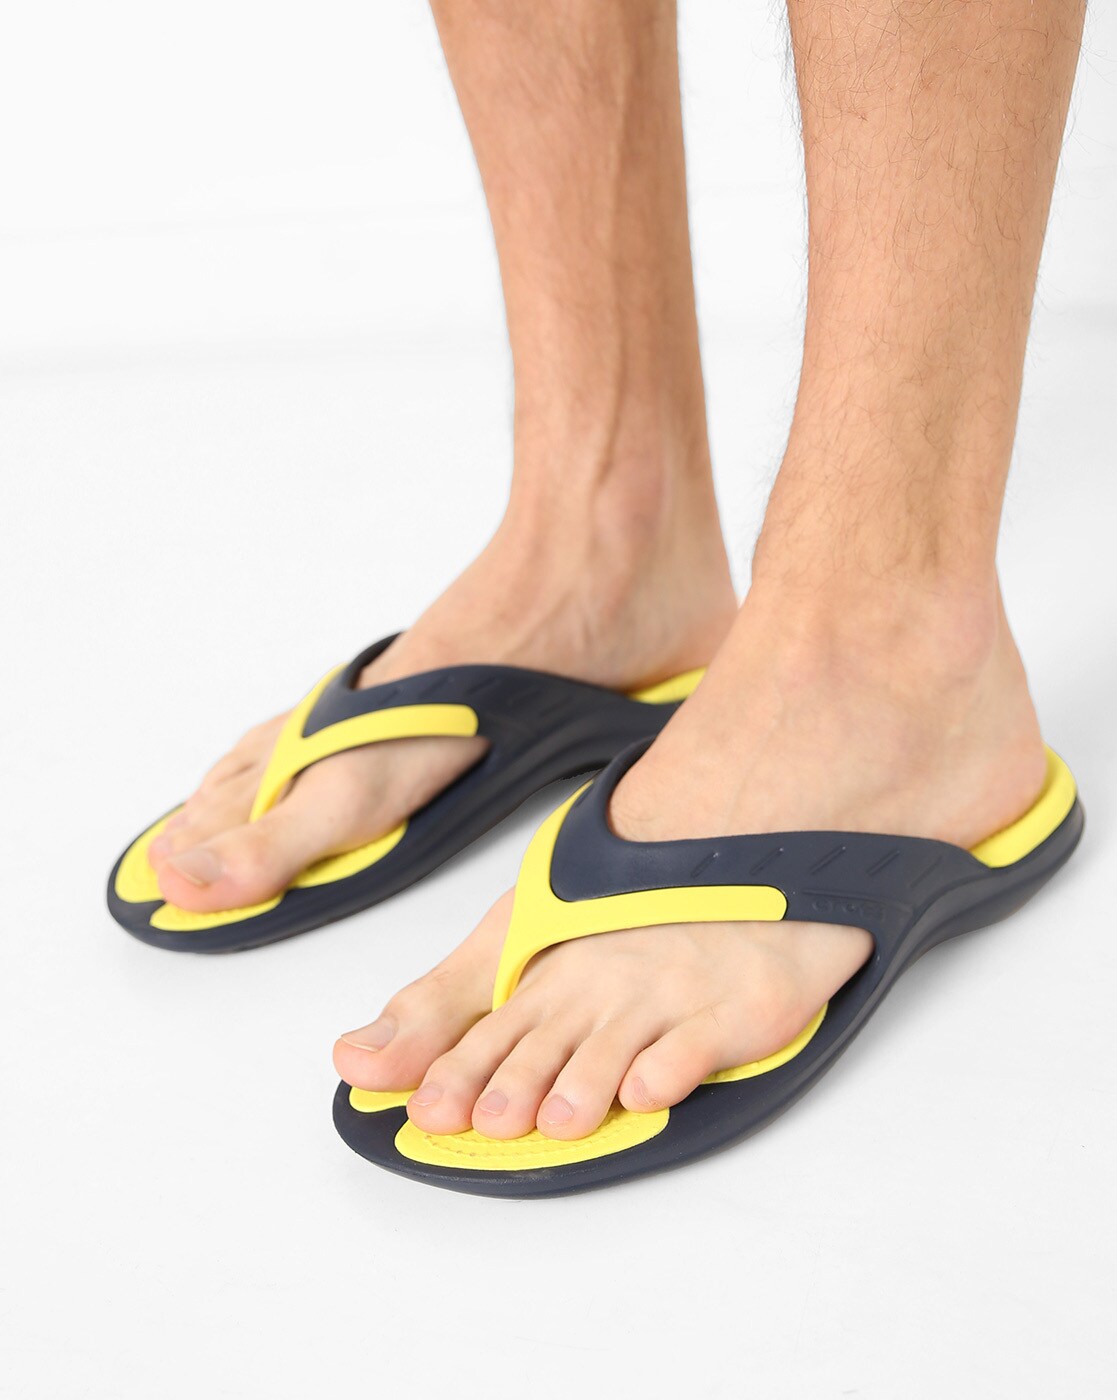 yellow croc flip flops